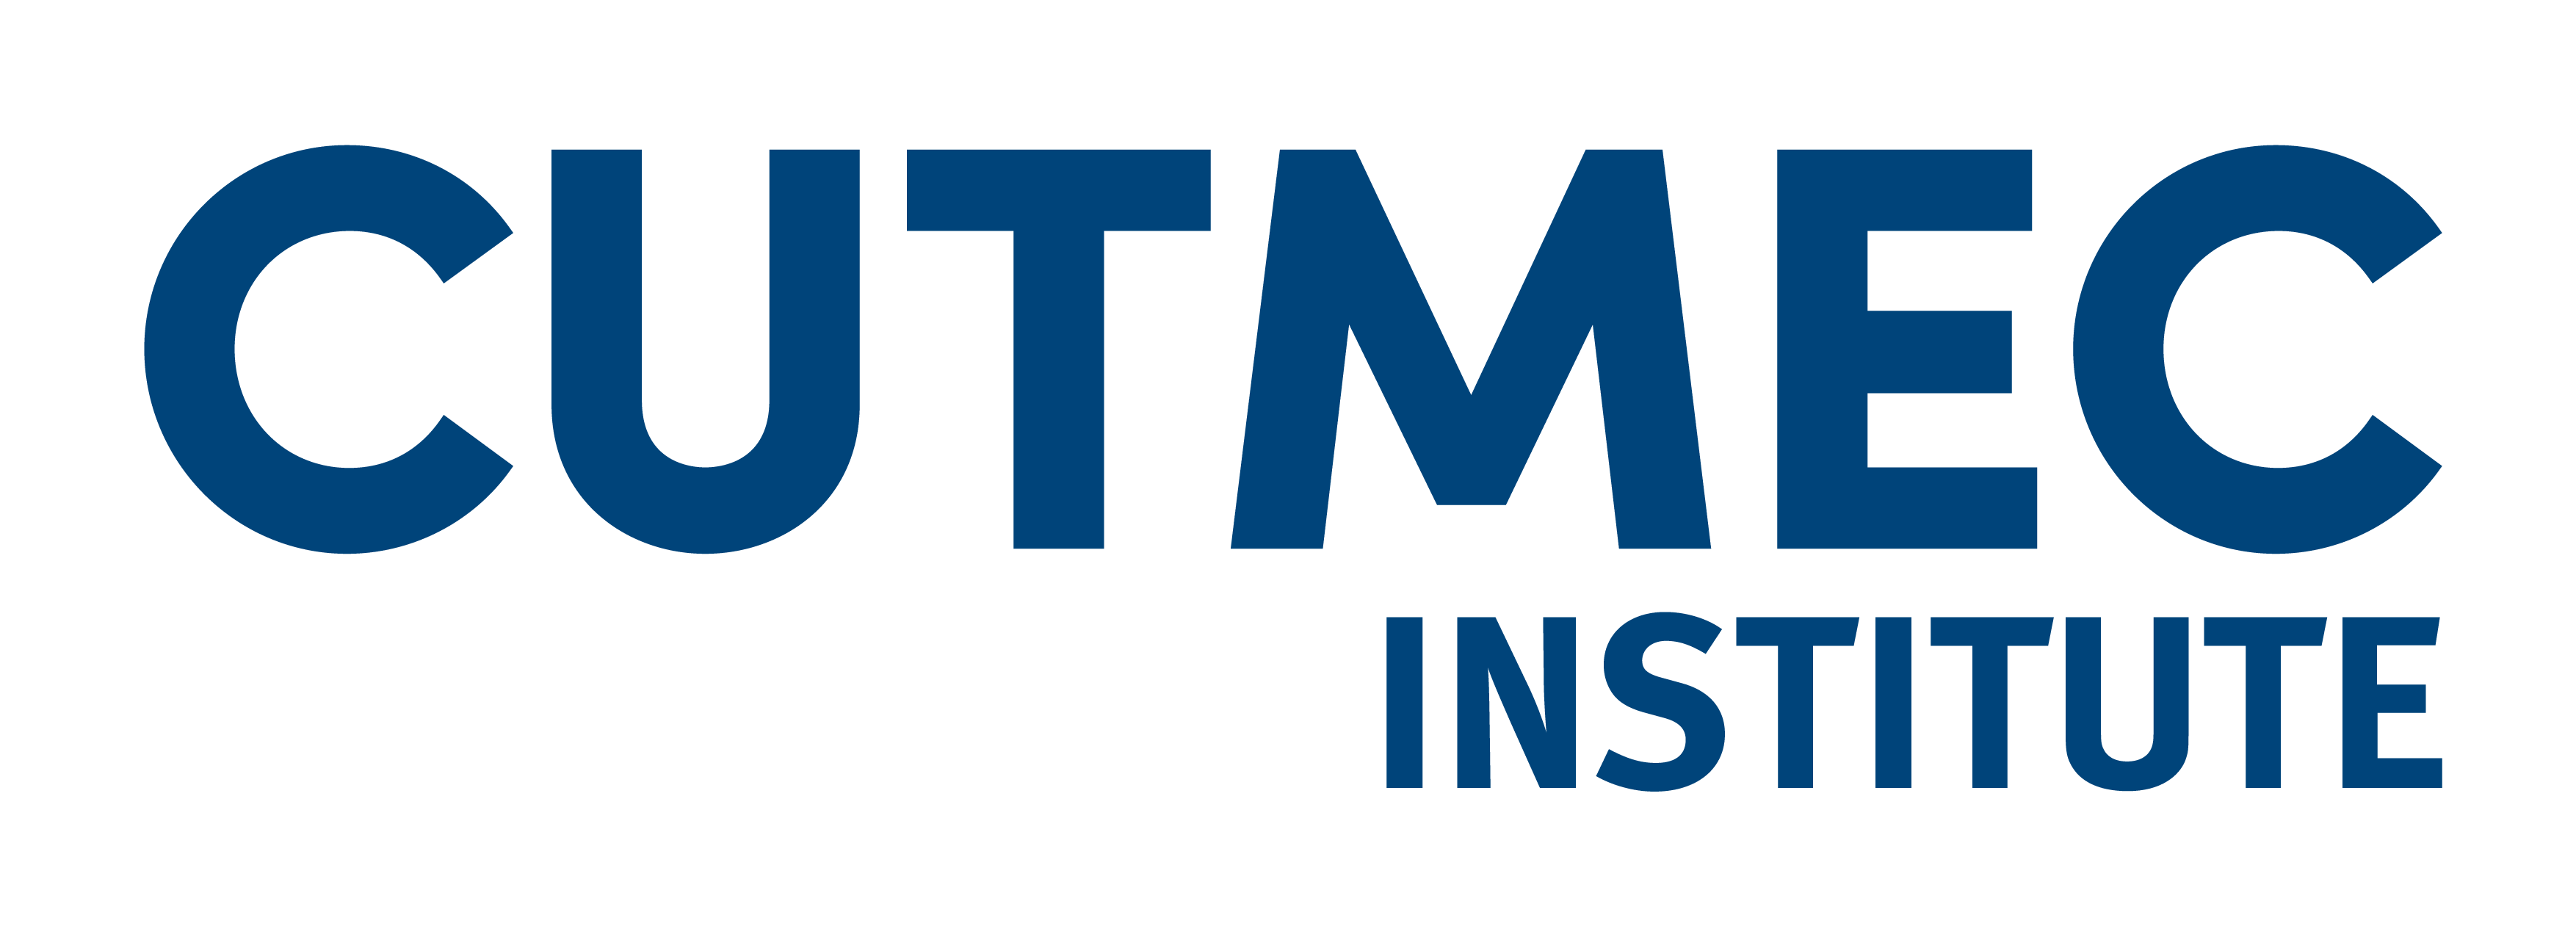 CUTMEC Institute logo in blue